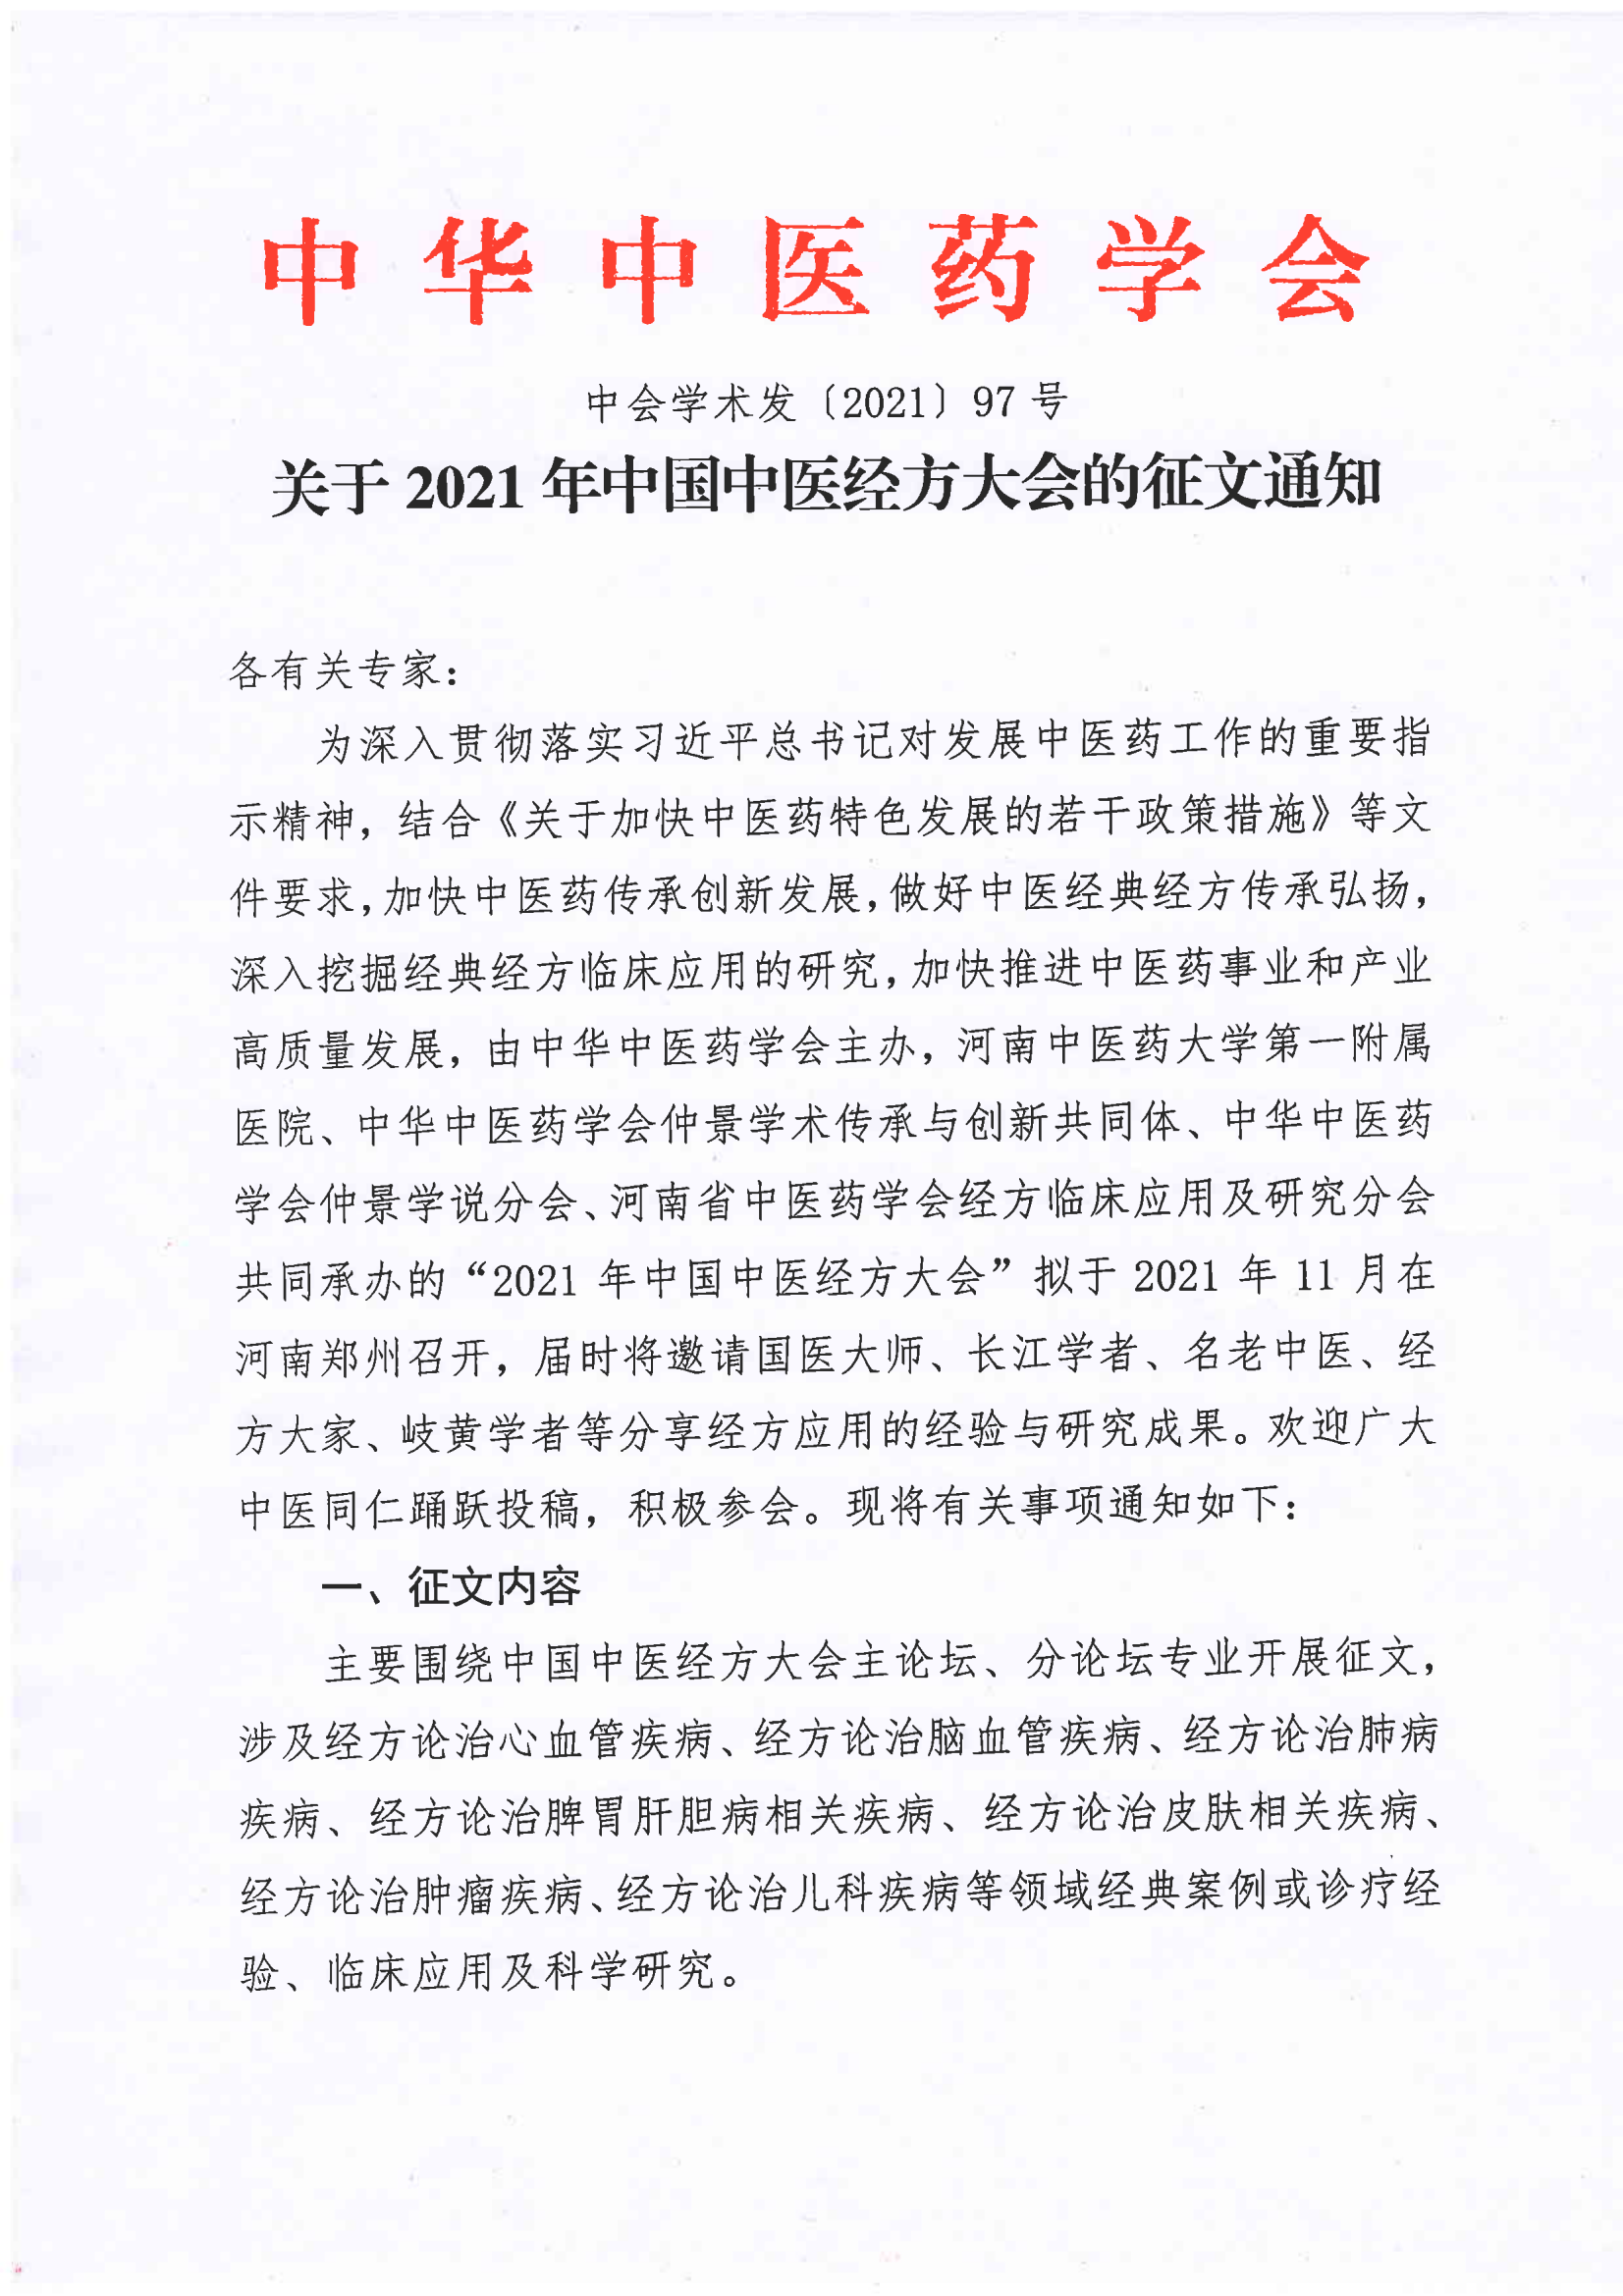 关于2021年中国中医经方大会的征文通知(1)_00.png